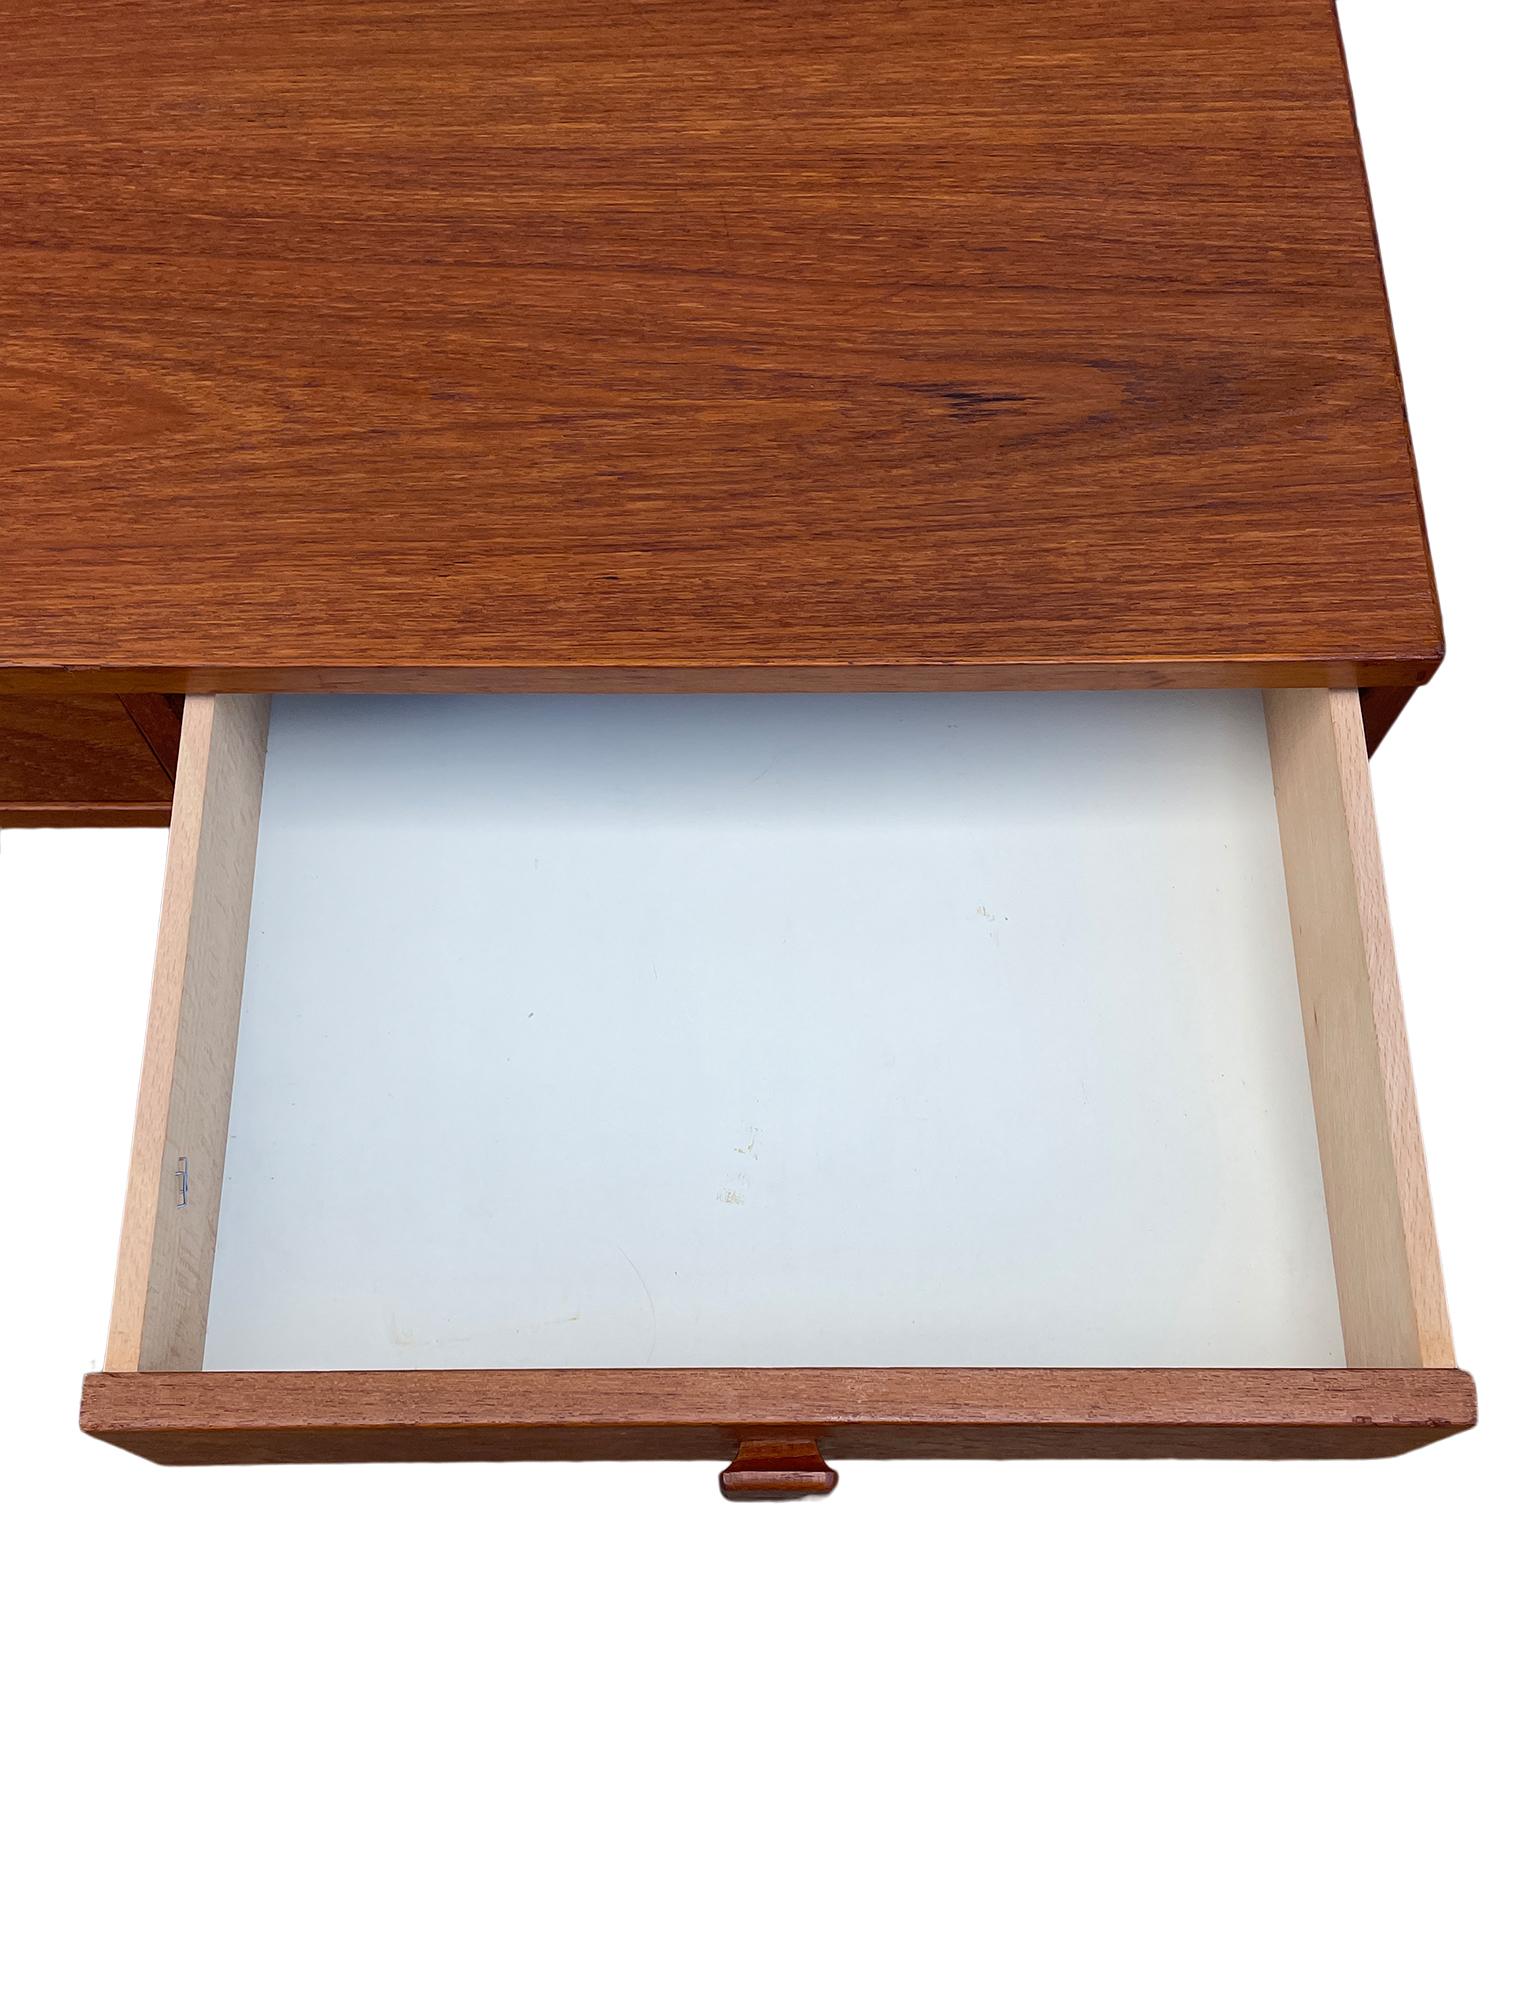 Midcentury Danish Modern teak Desk by Georg Petersens 3 drawer 1